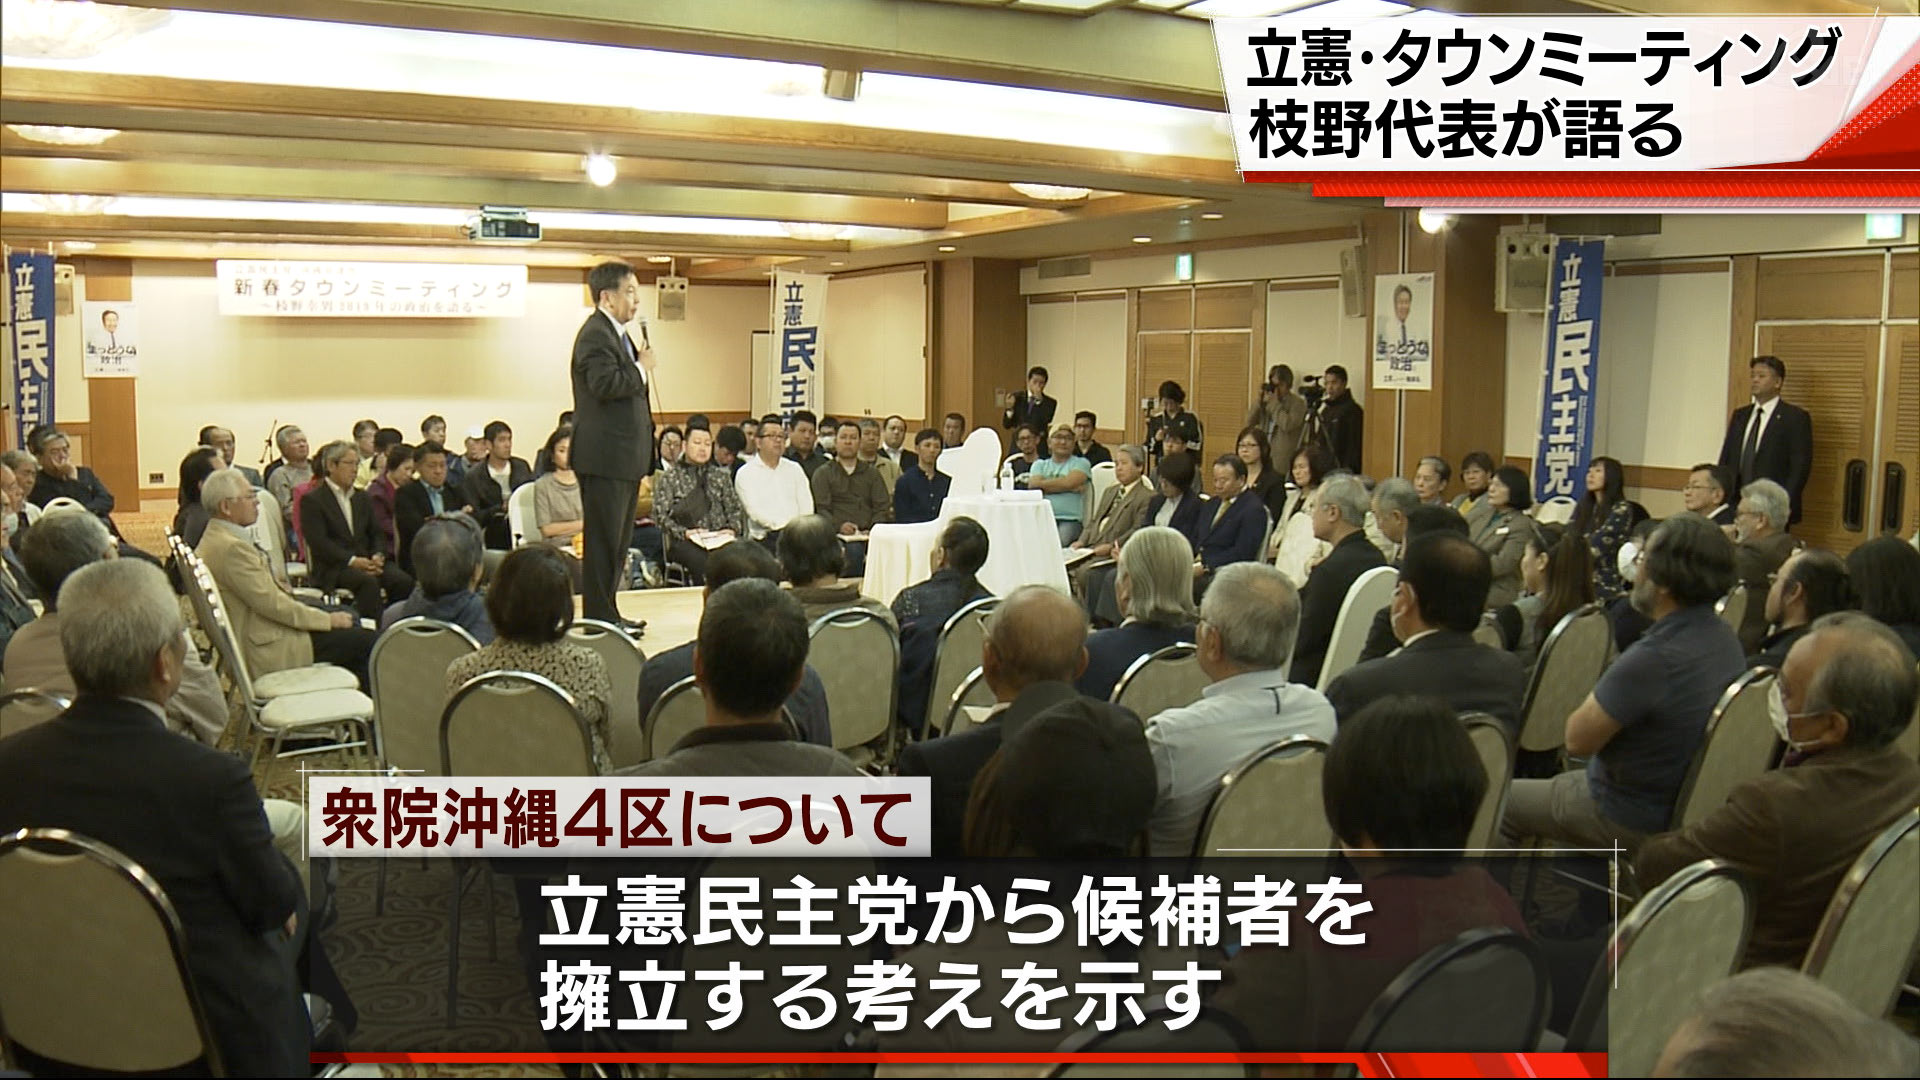 立憲民主党の枝野幸男代表が講演